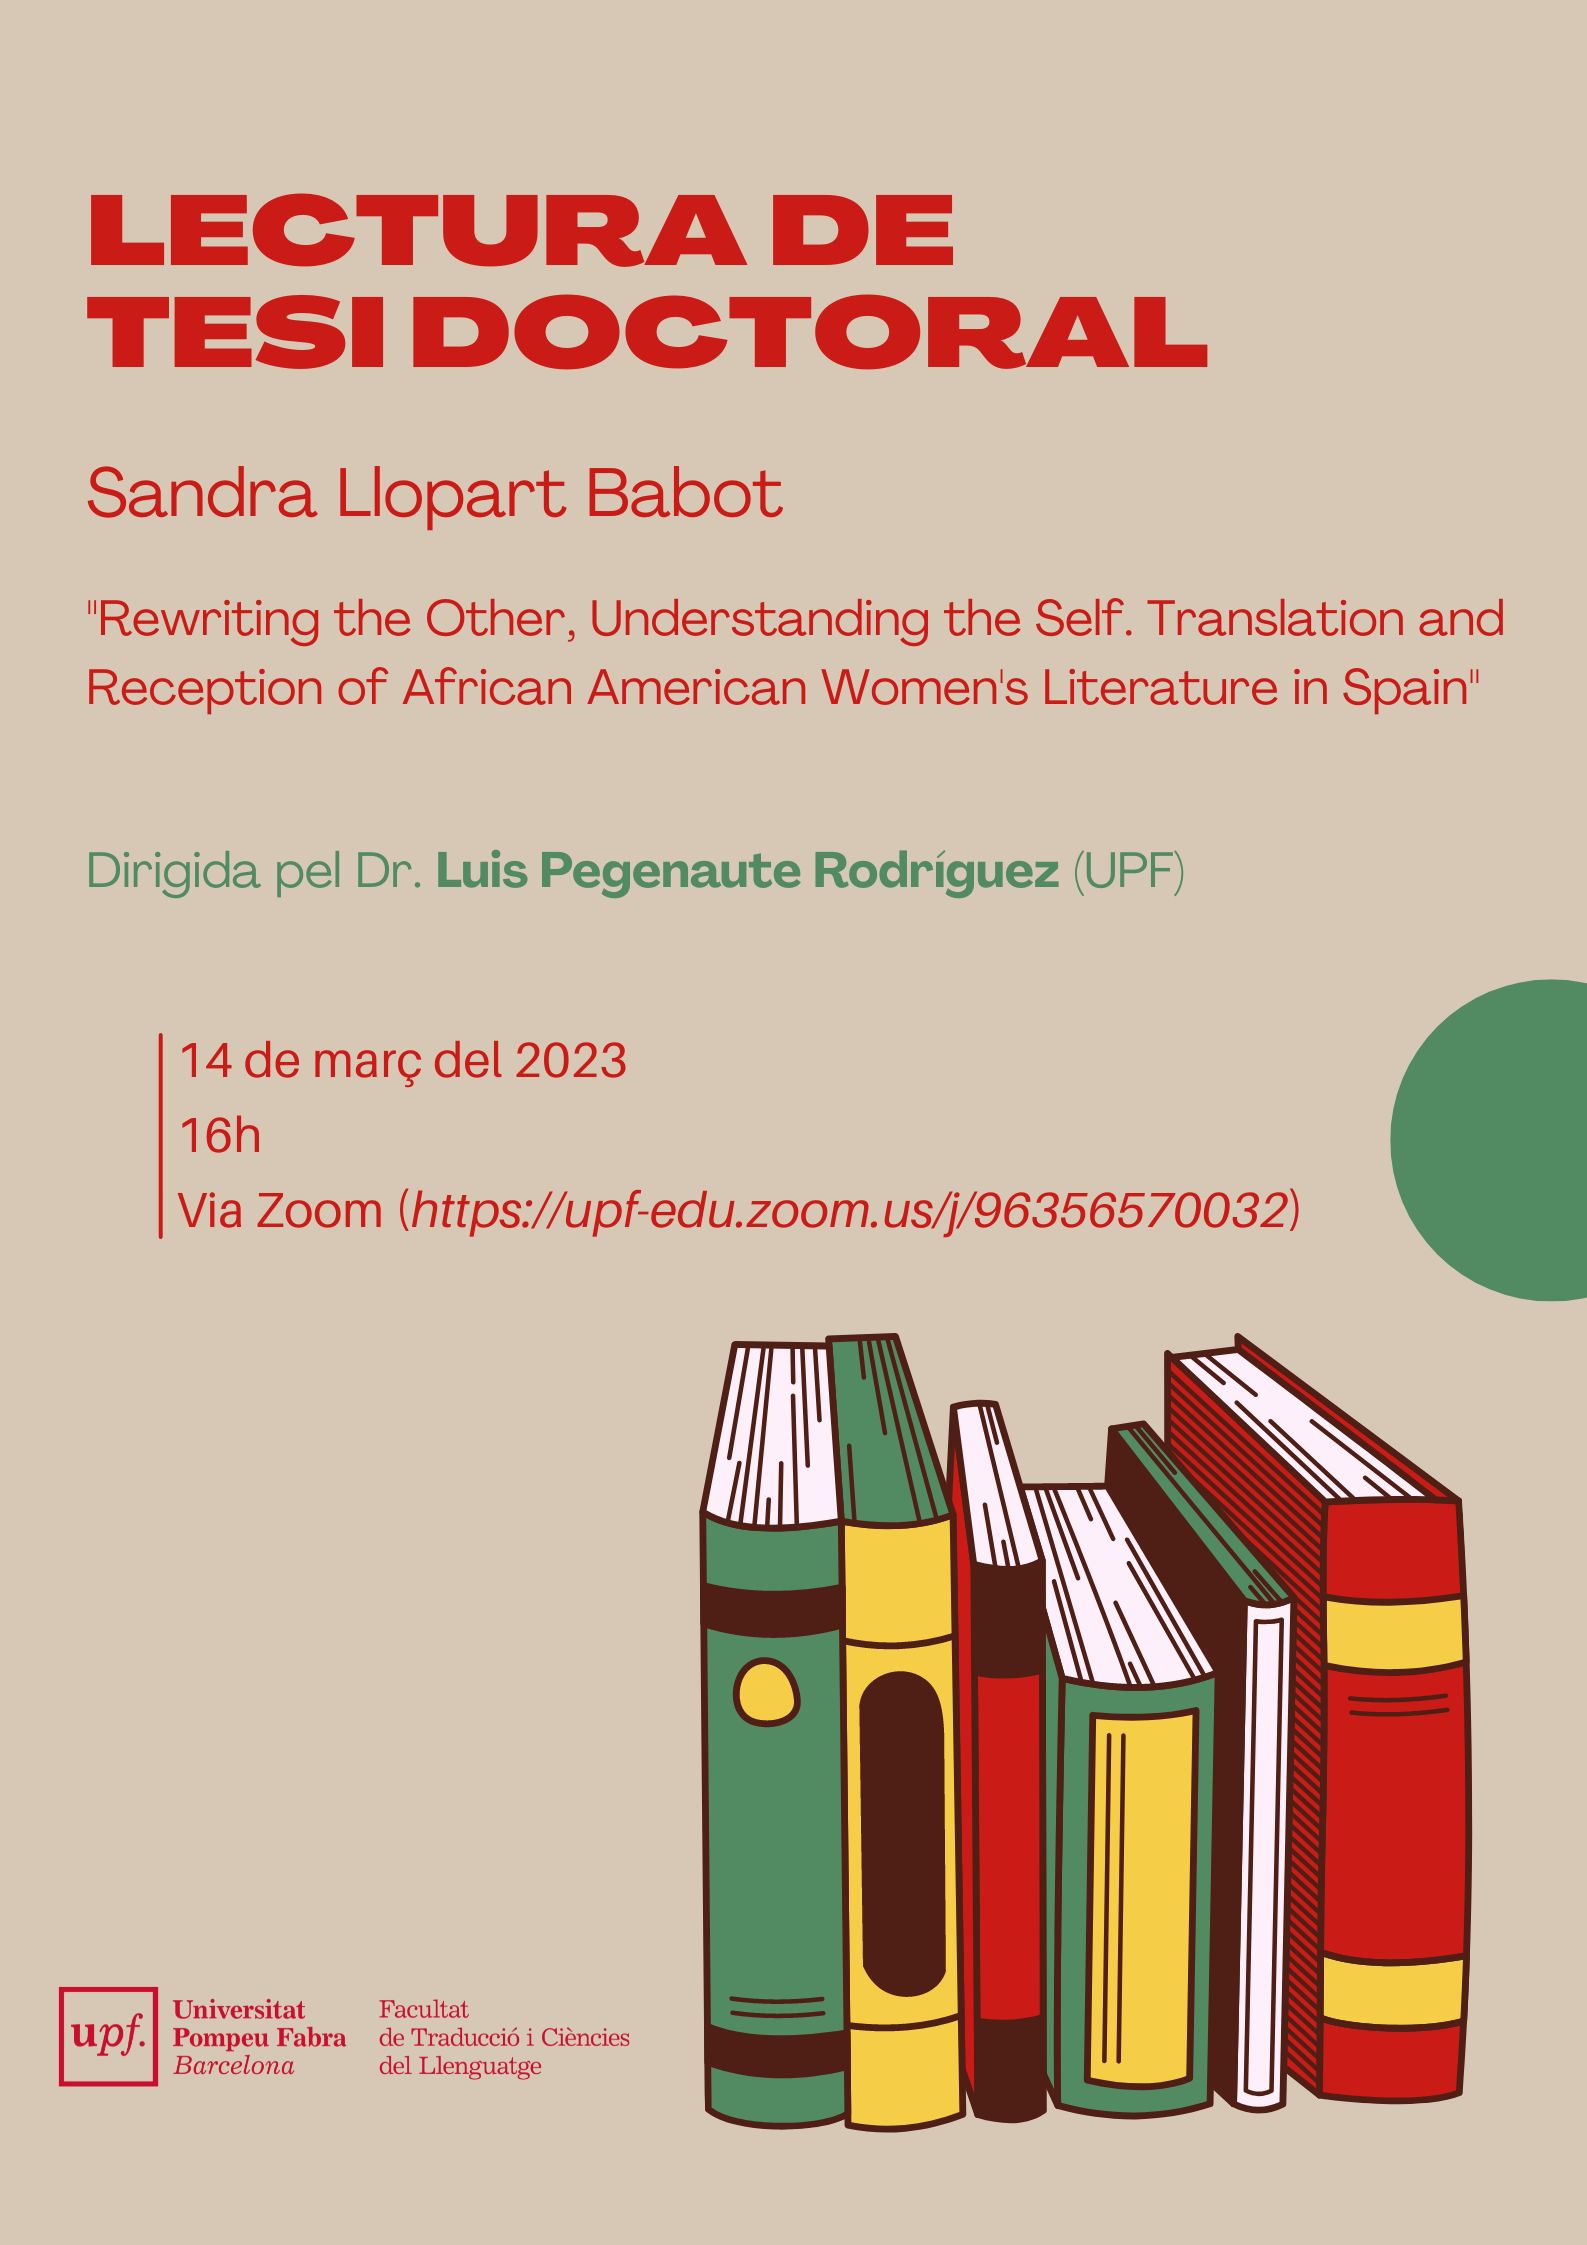 14/03/2023 Lectura de la tesi doctoral de Sandra Llopart Babot, a les 16.00 hores